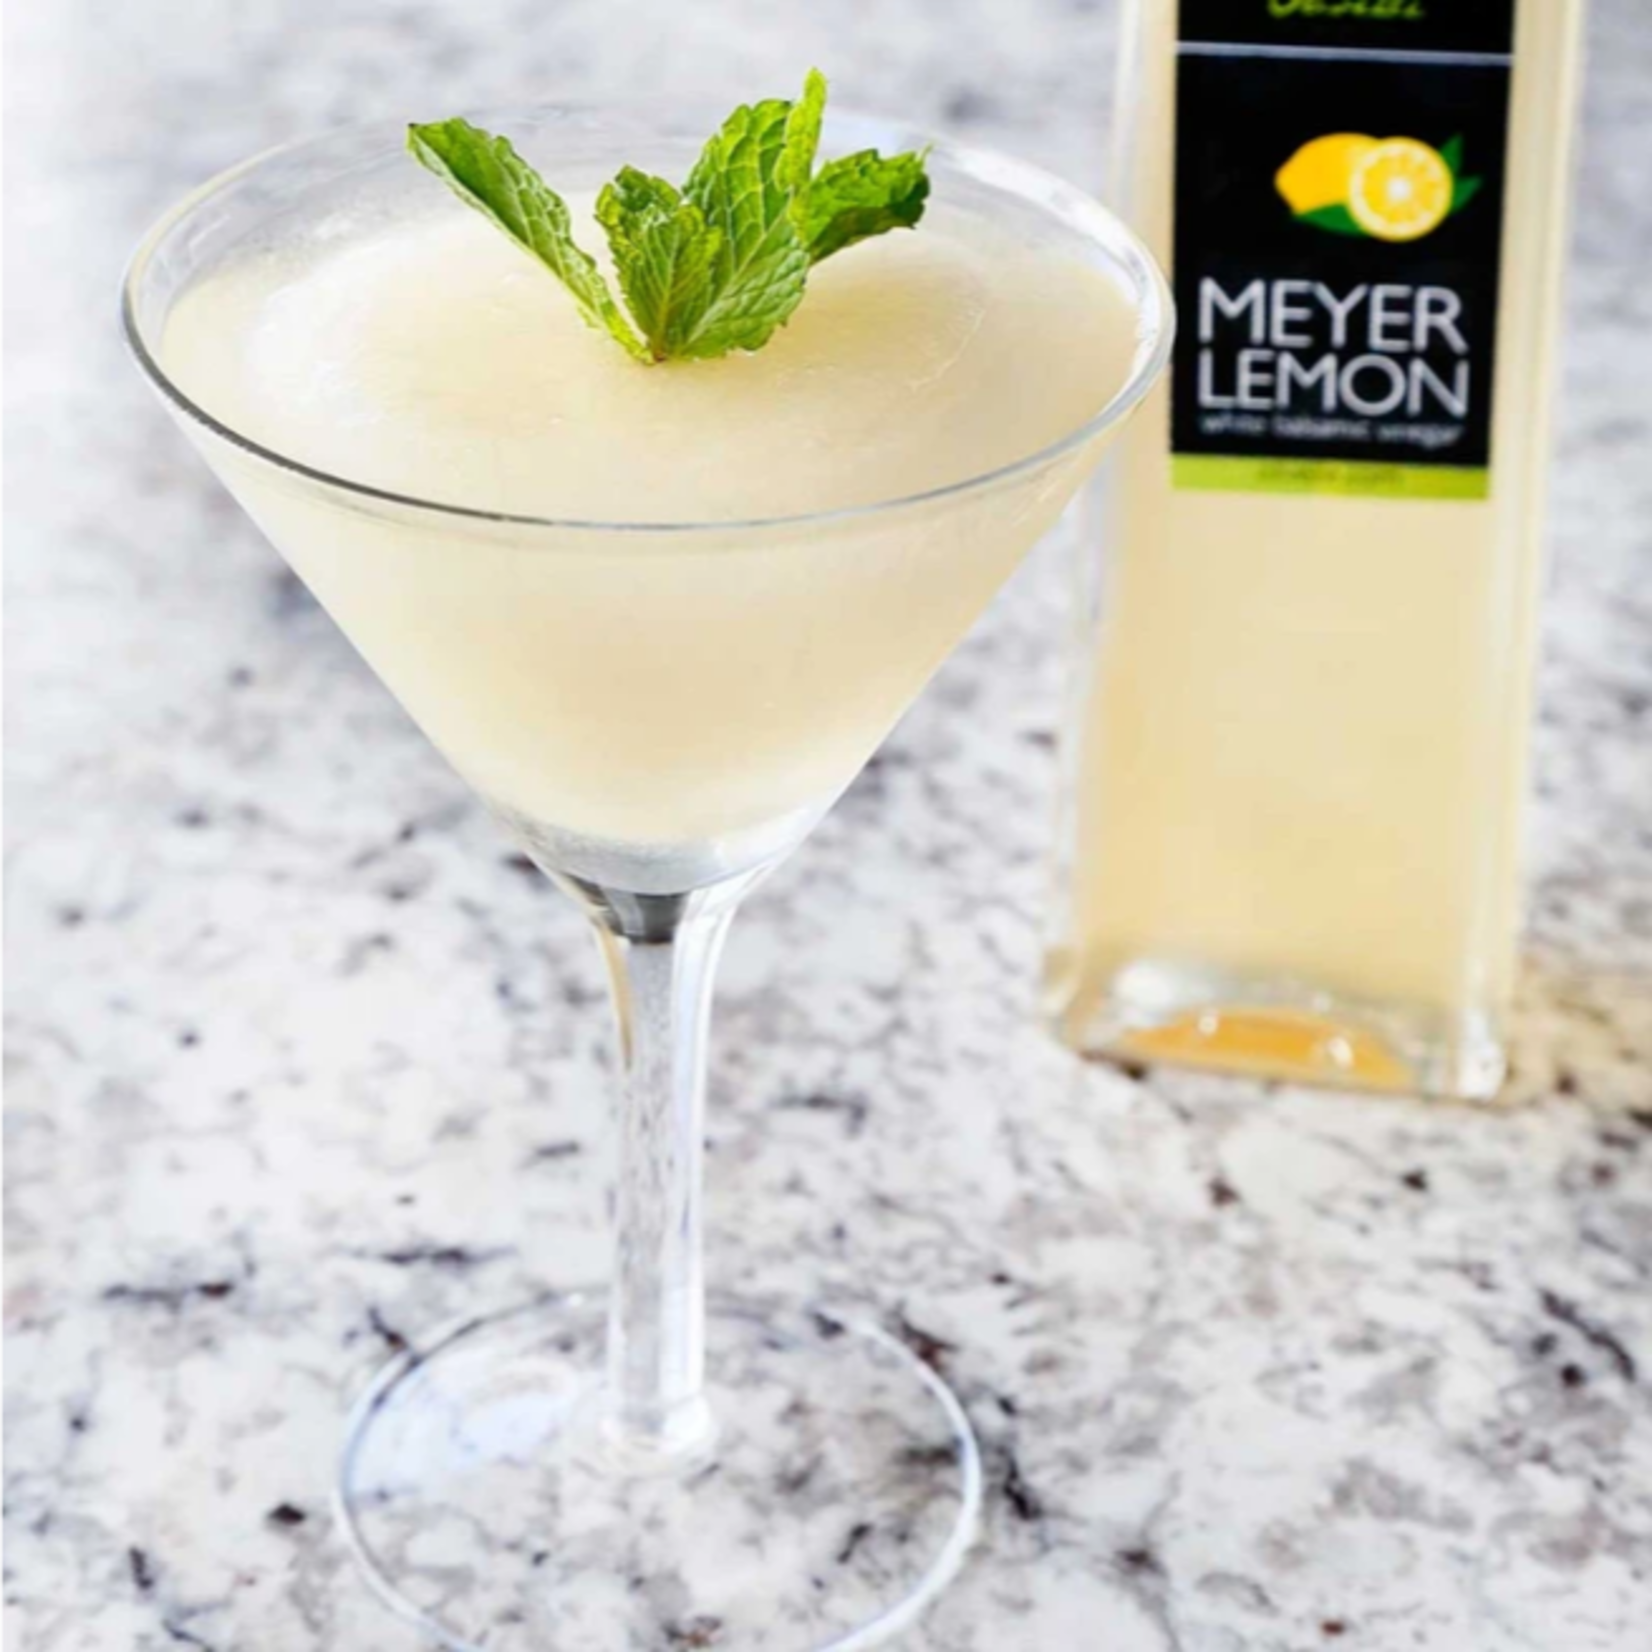 Olivelle Meyer Lemon White Balsamic